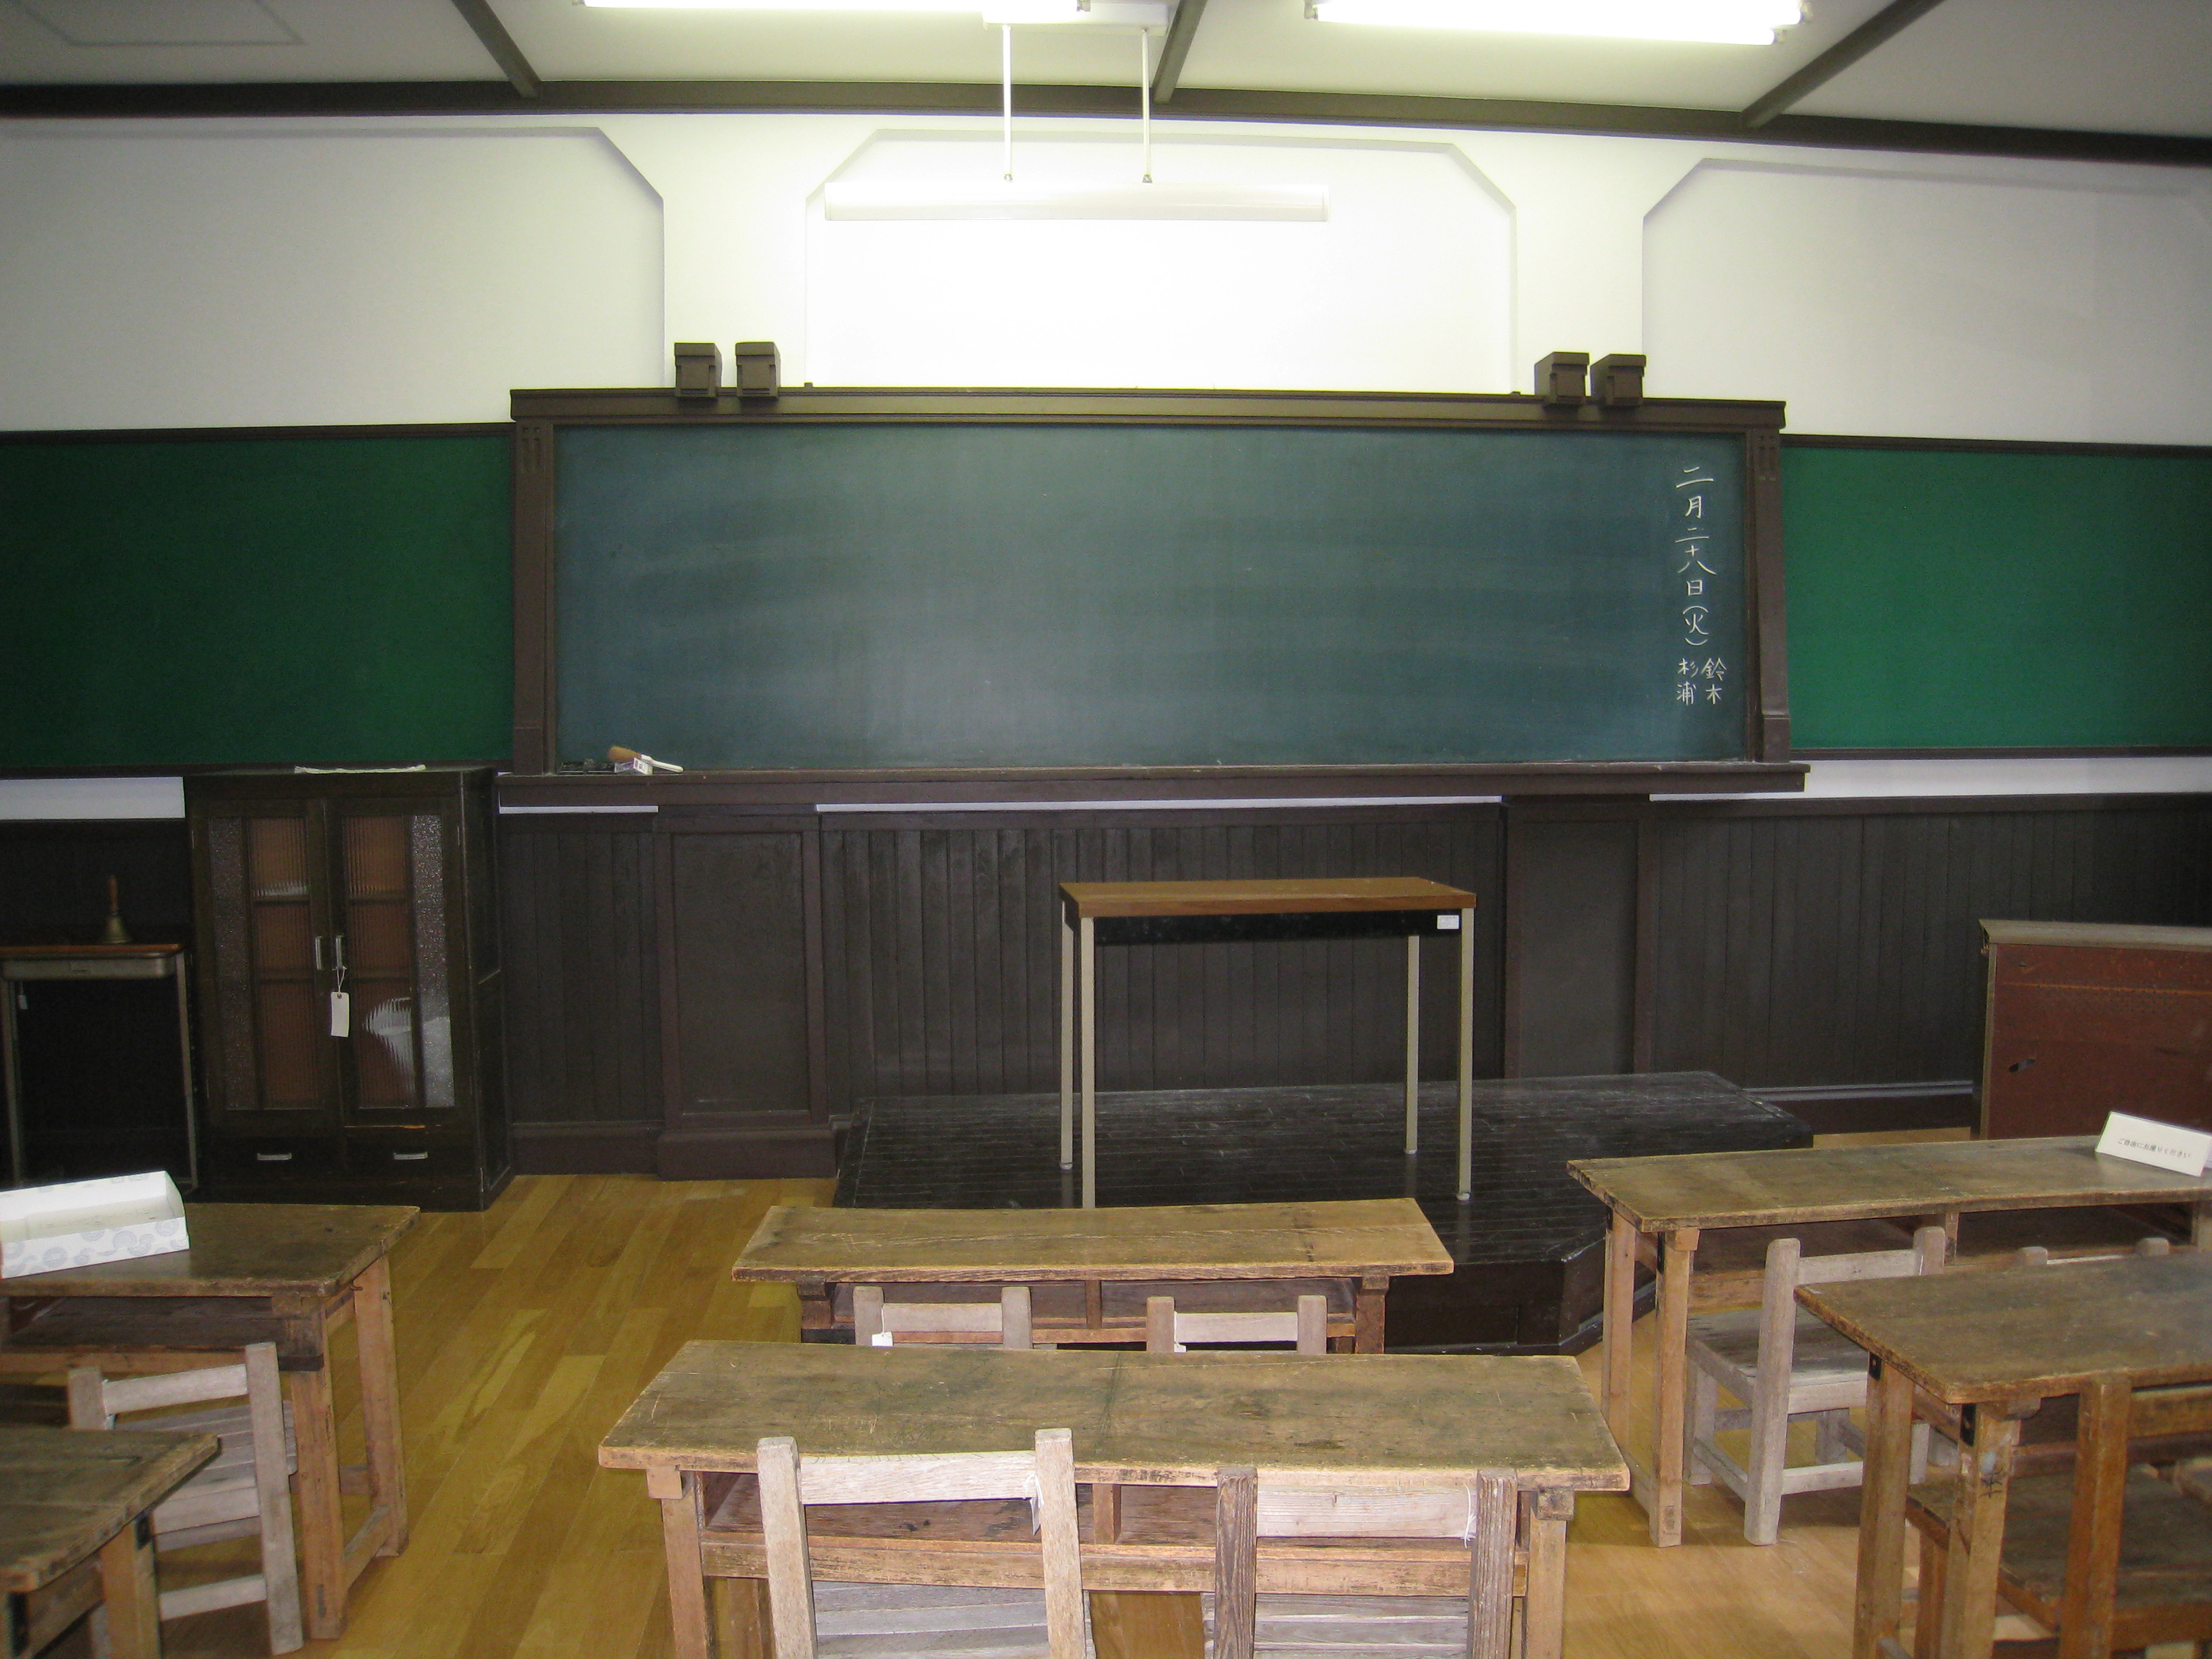 再現された教室